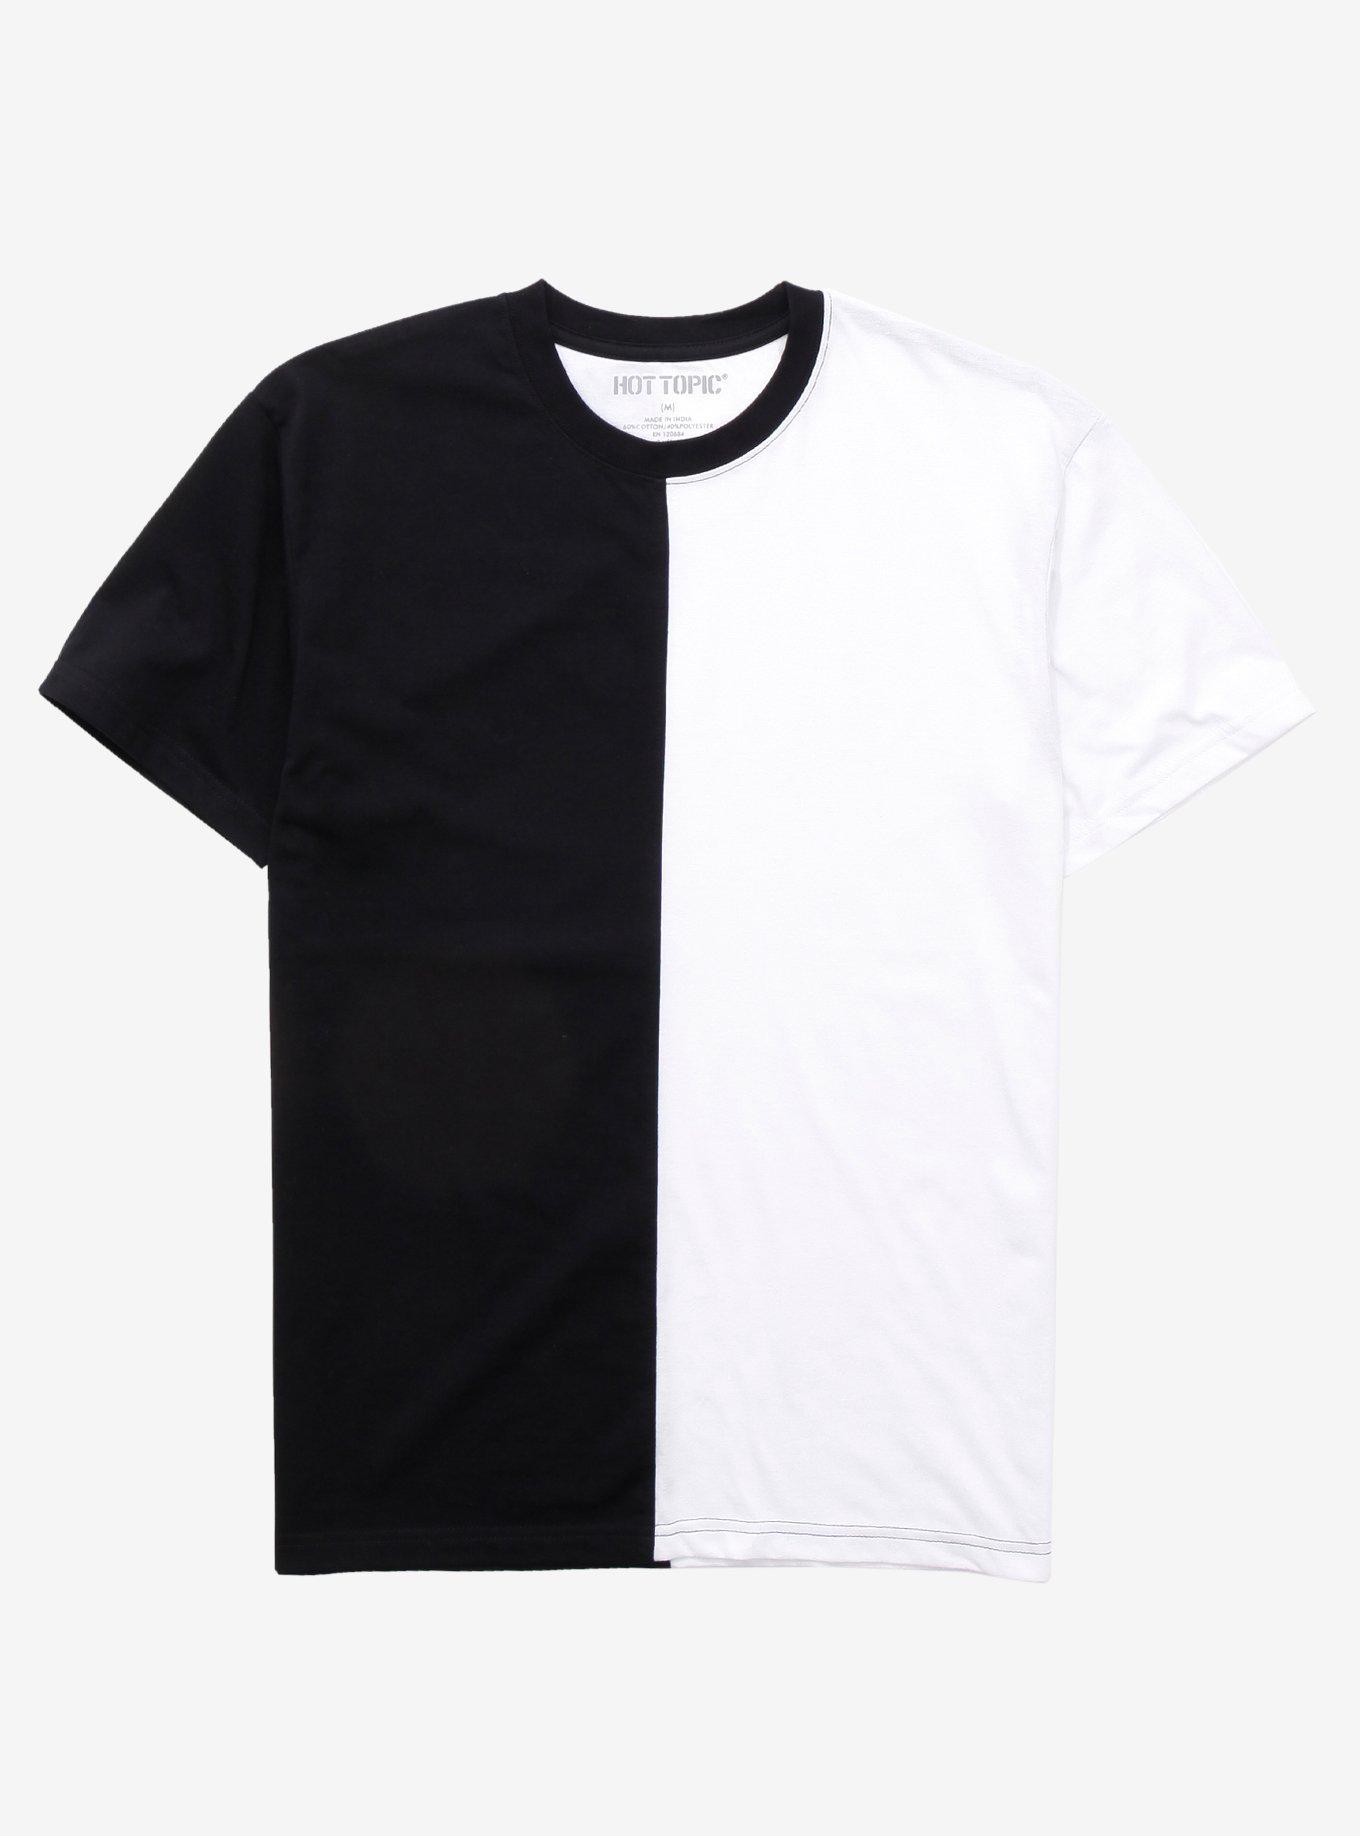 Black & White Black Shirts for Men for sale